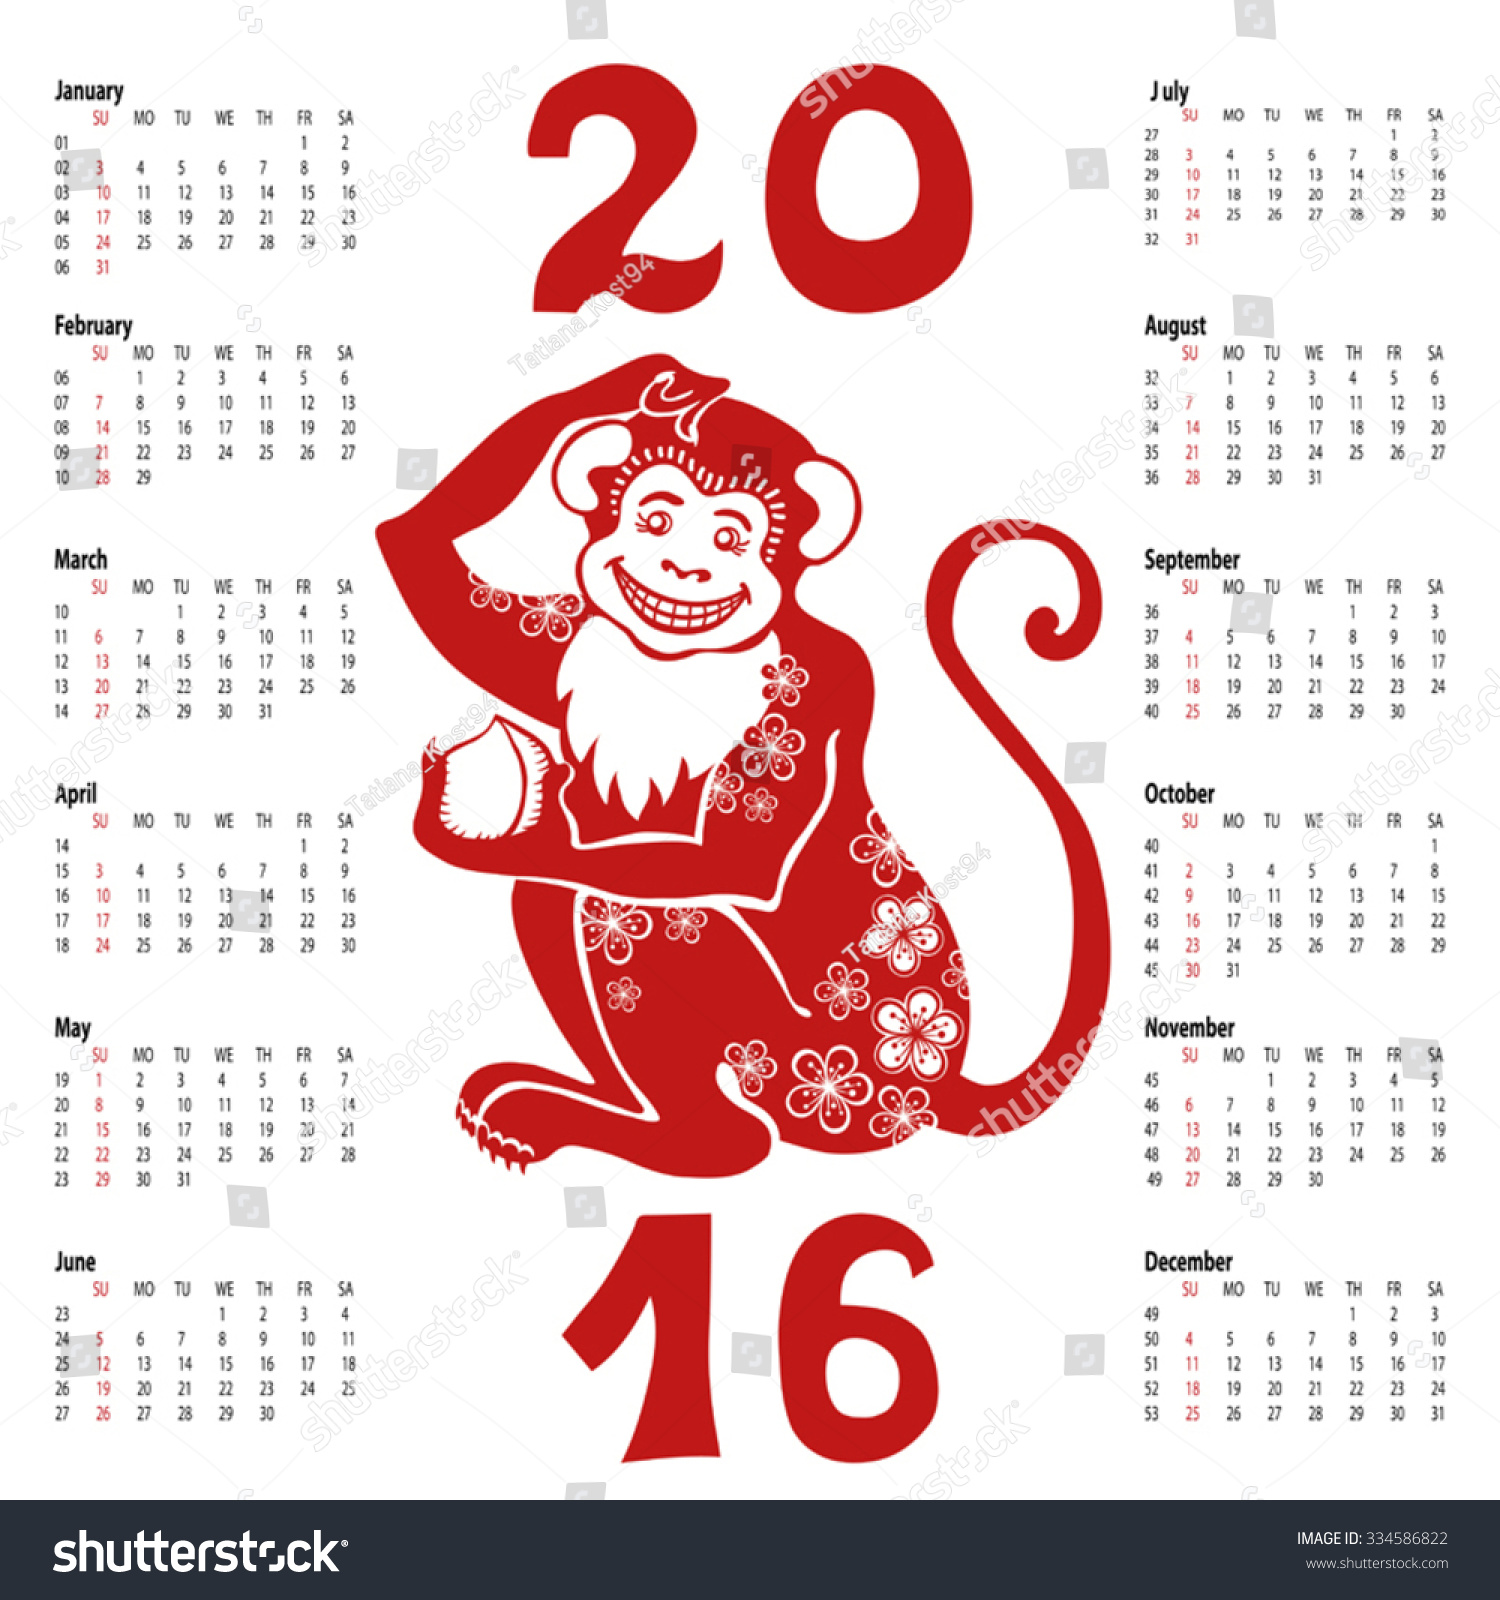 Год обезьяны календари. Календарь 2016 год обезьяны. Календарь с обезьянами 2016. Китайский календарь обезьяна. Календарь на новый год 2016 год обезьяны.